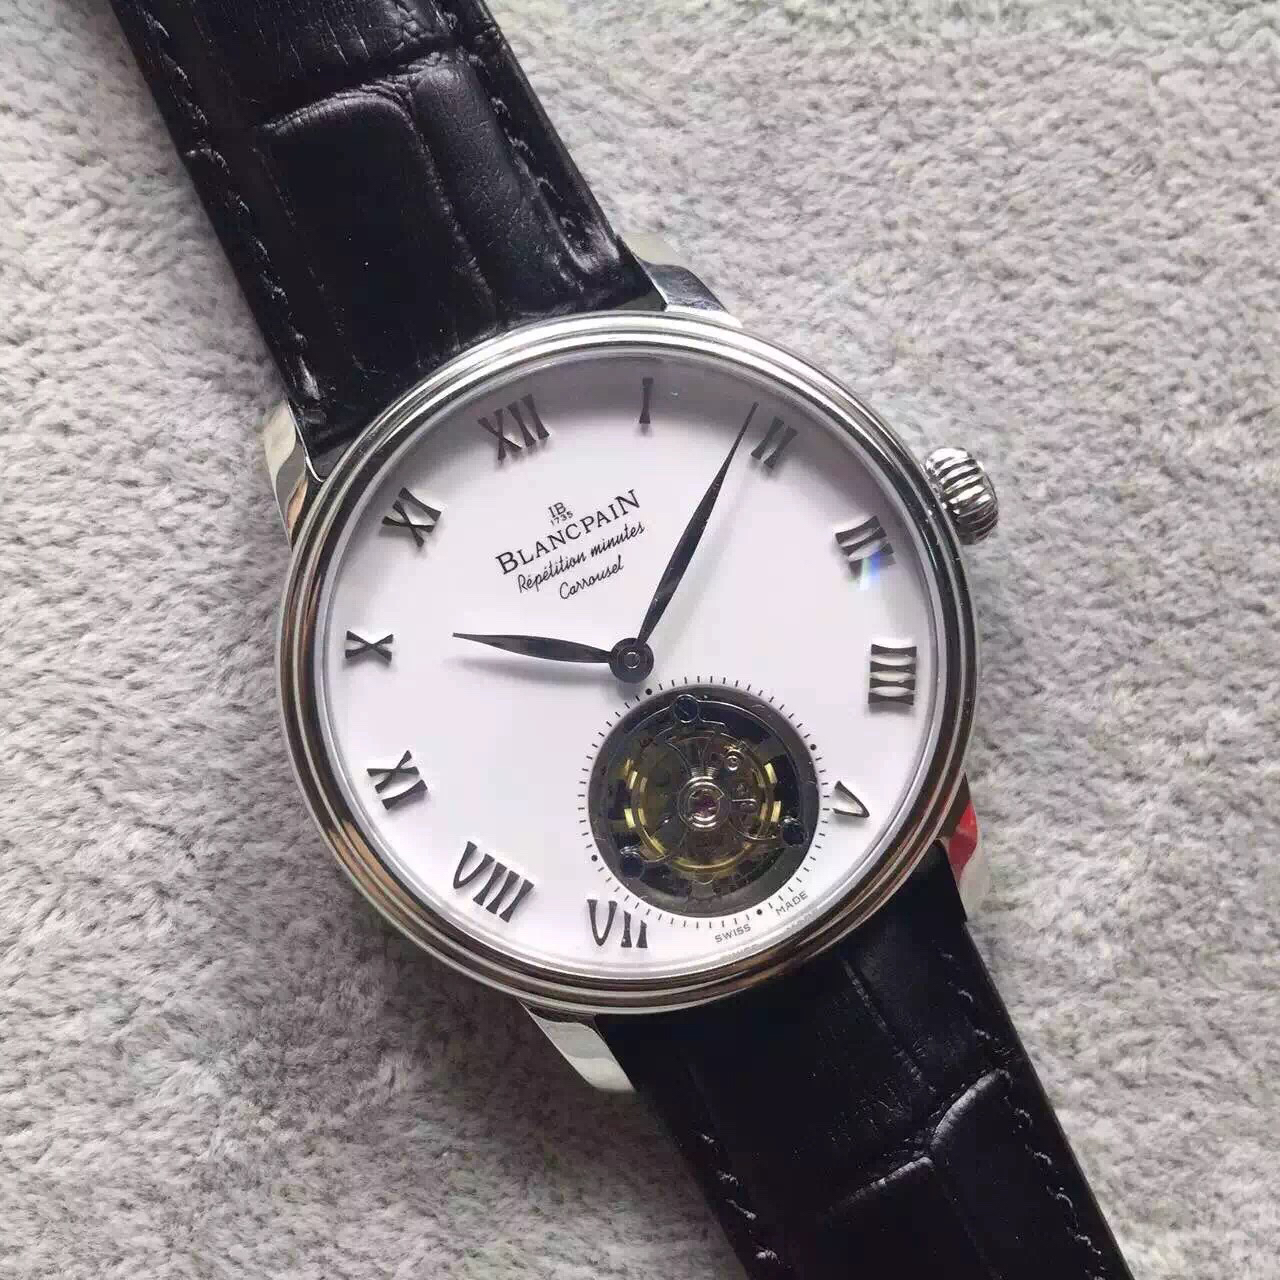 202305270248107 - 復刻手錶寶珀手錶在哪買 LH寶珀佈拉蘇斯陀飛輪￥5880